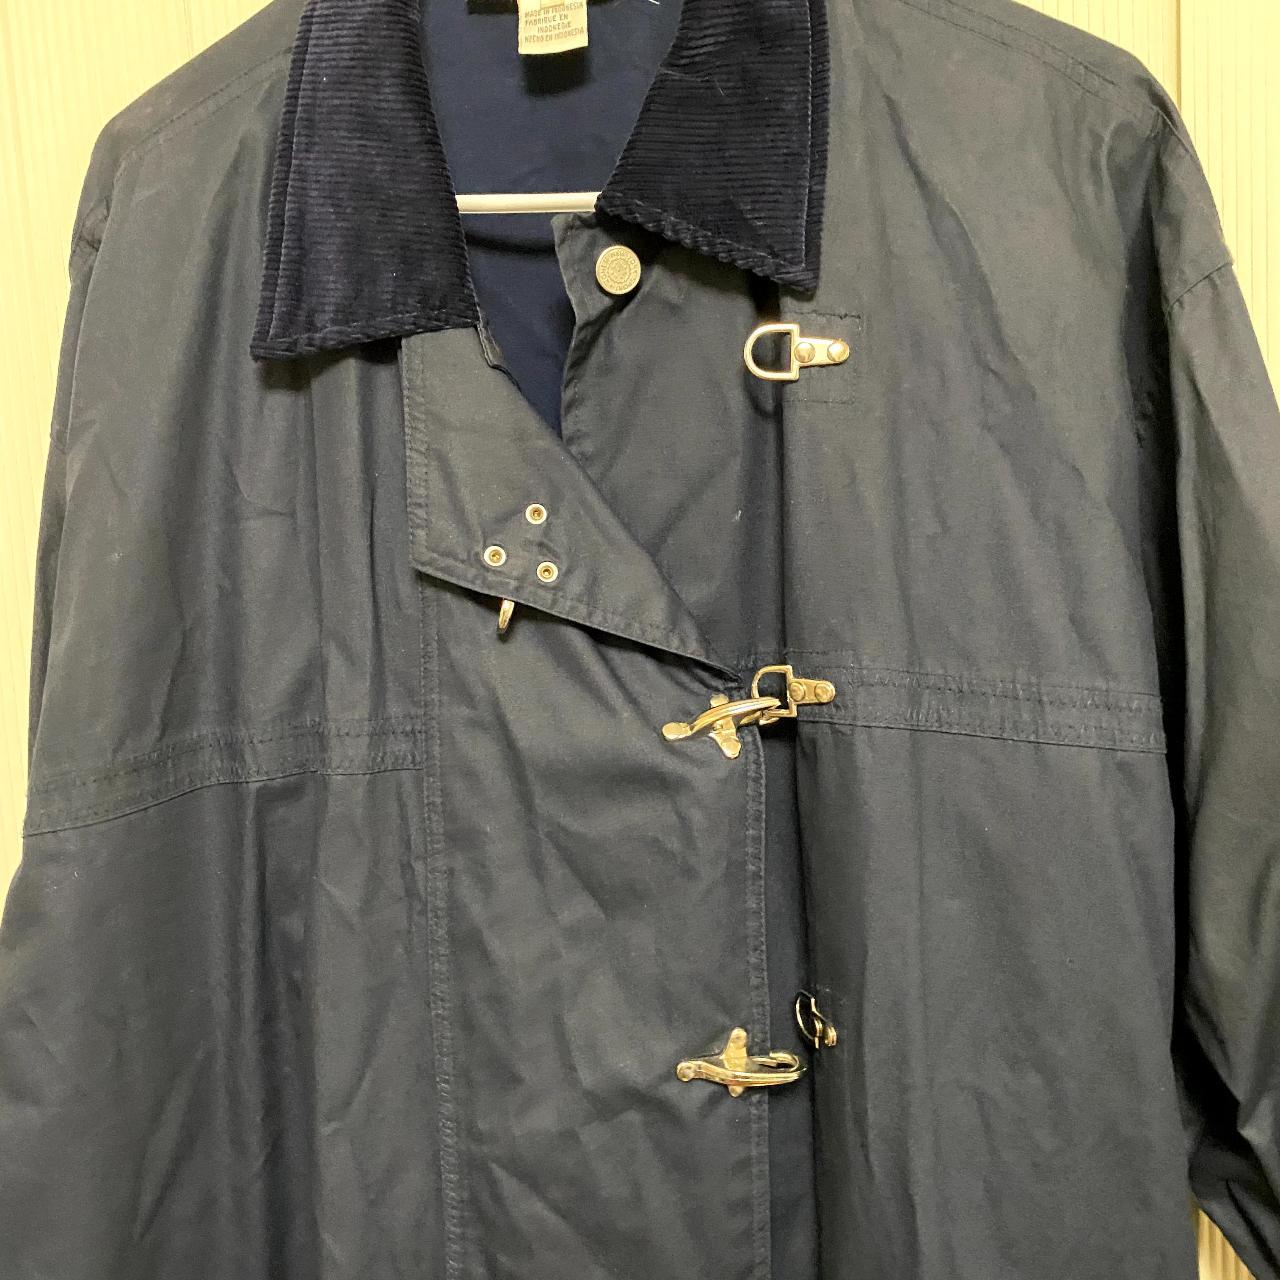 New Unisex Jones New York sailor's coat with a... - Depop